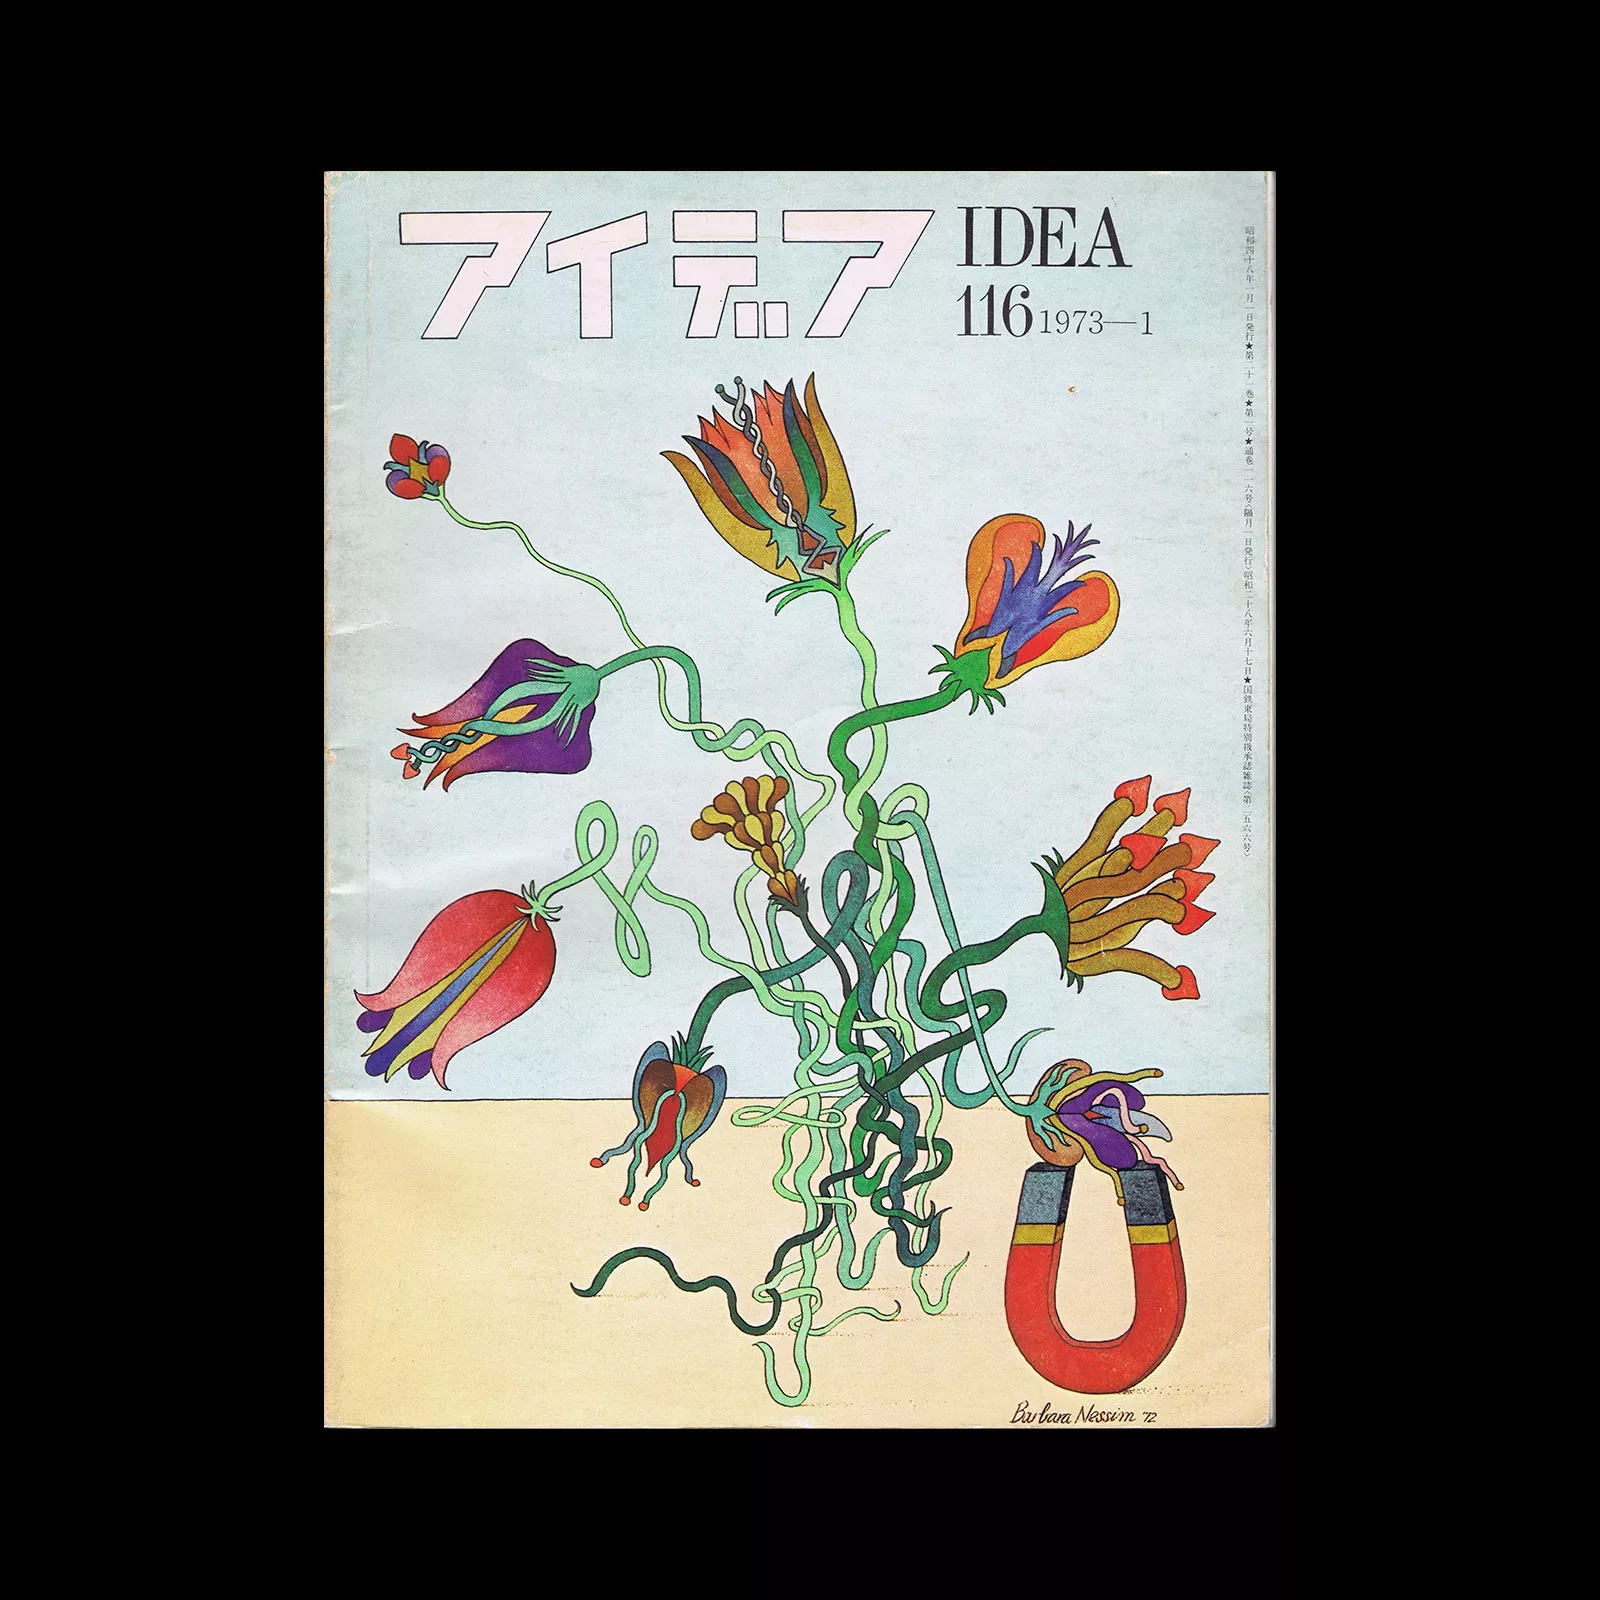 Idea 116, 1973. Cover design by Barbara Nessim